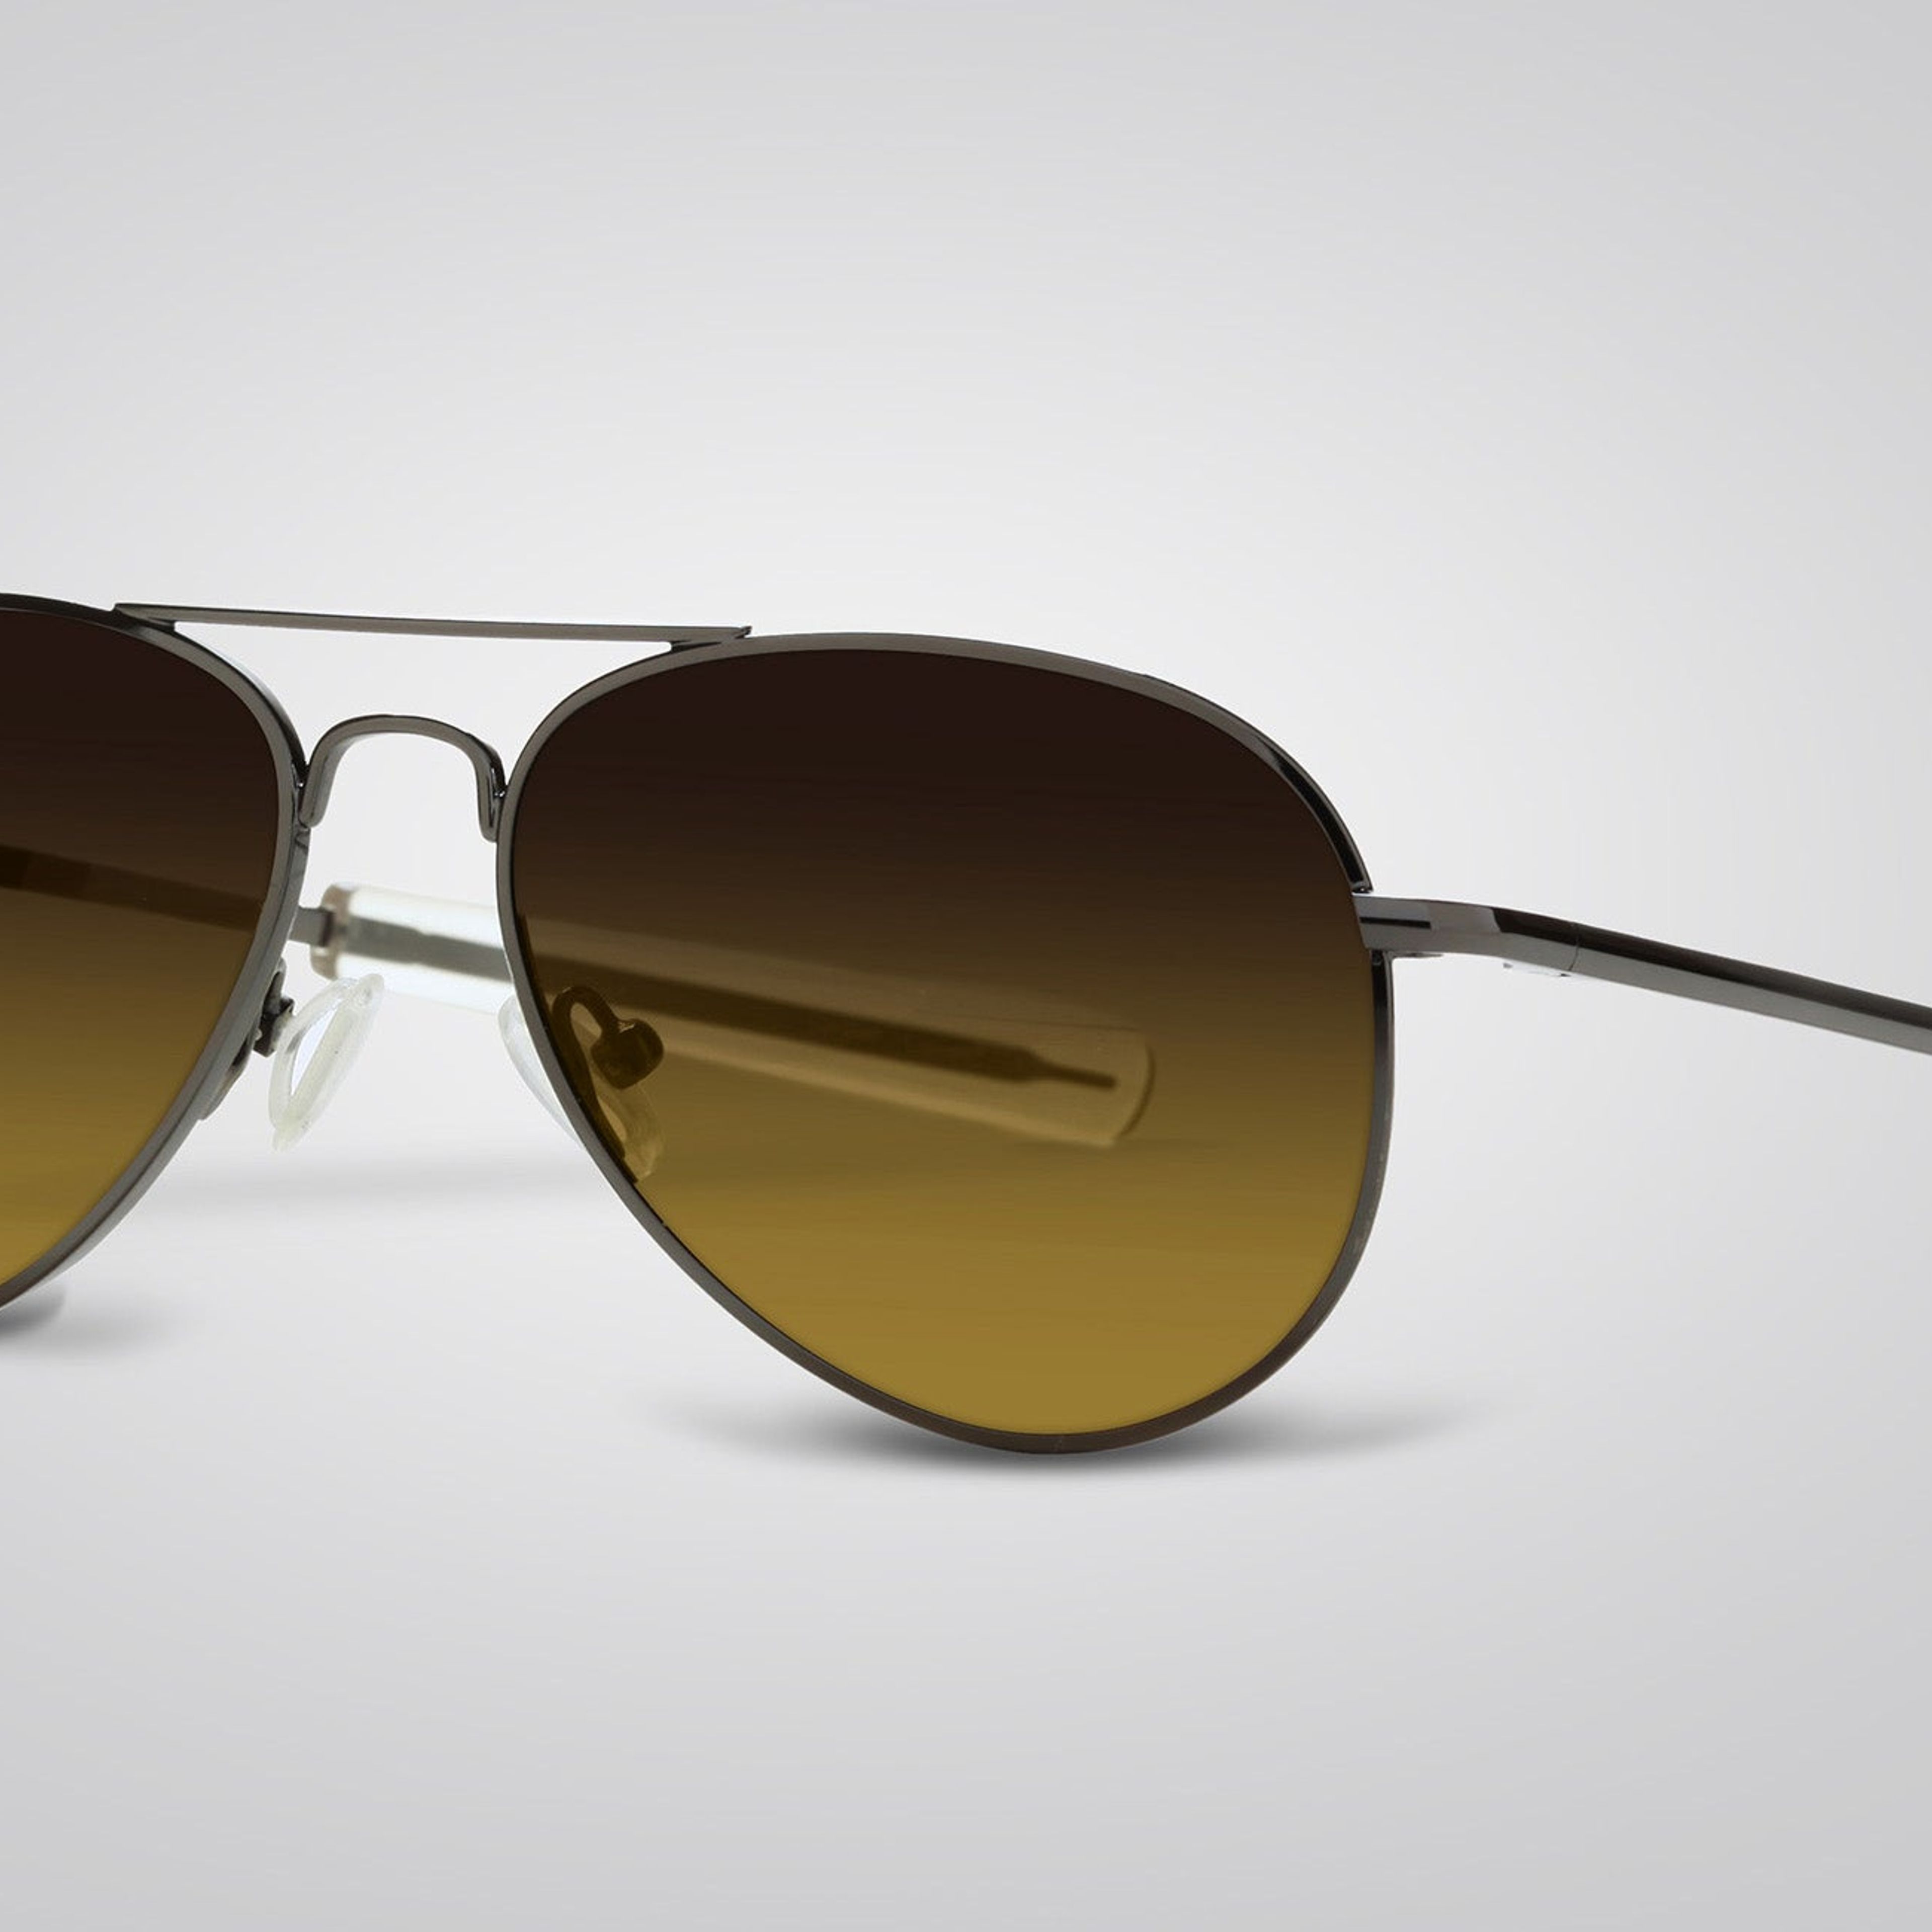 Freedom Oval Aviator Sunglasses